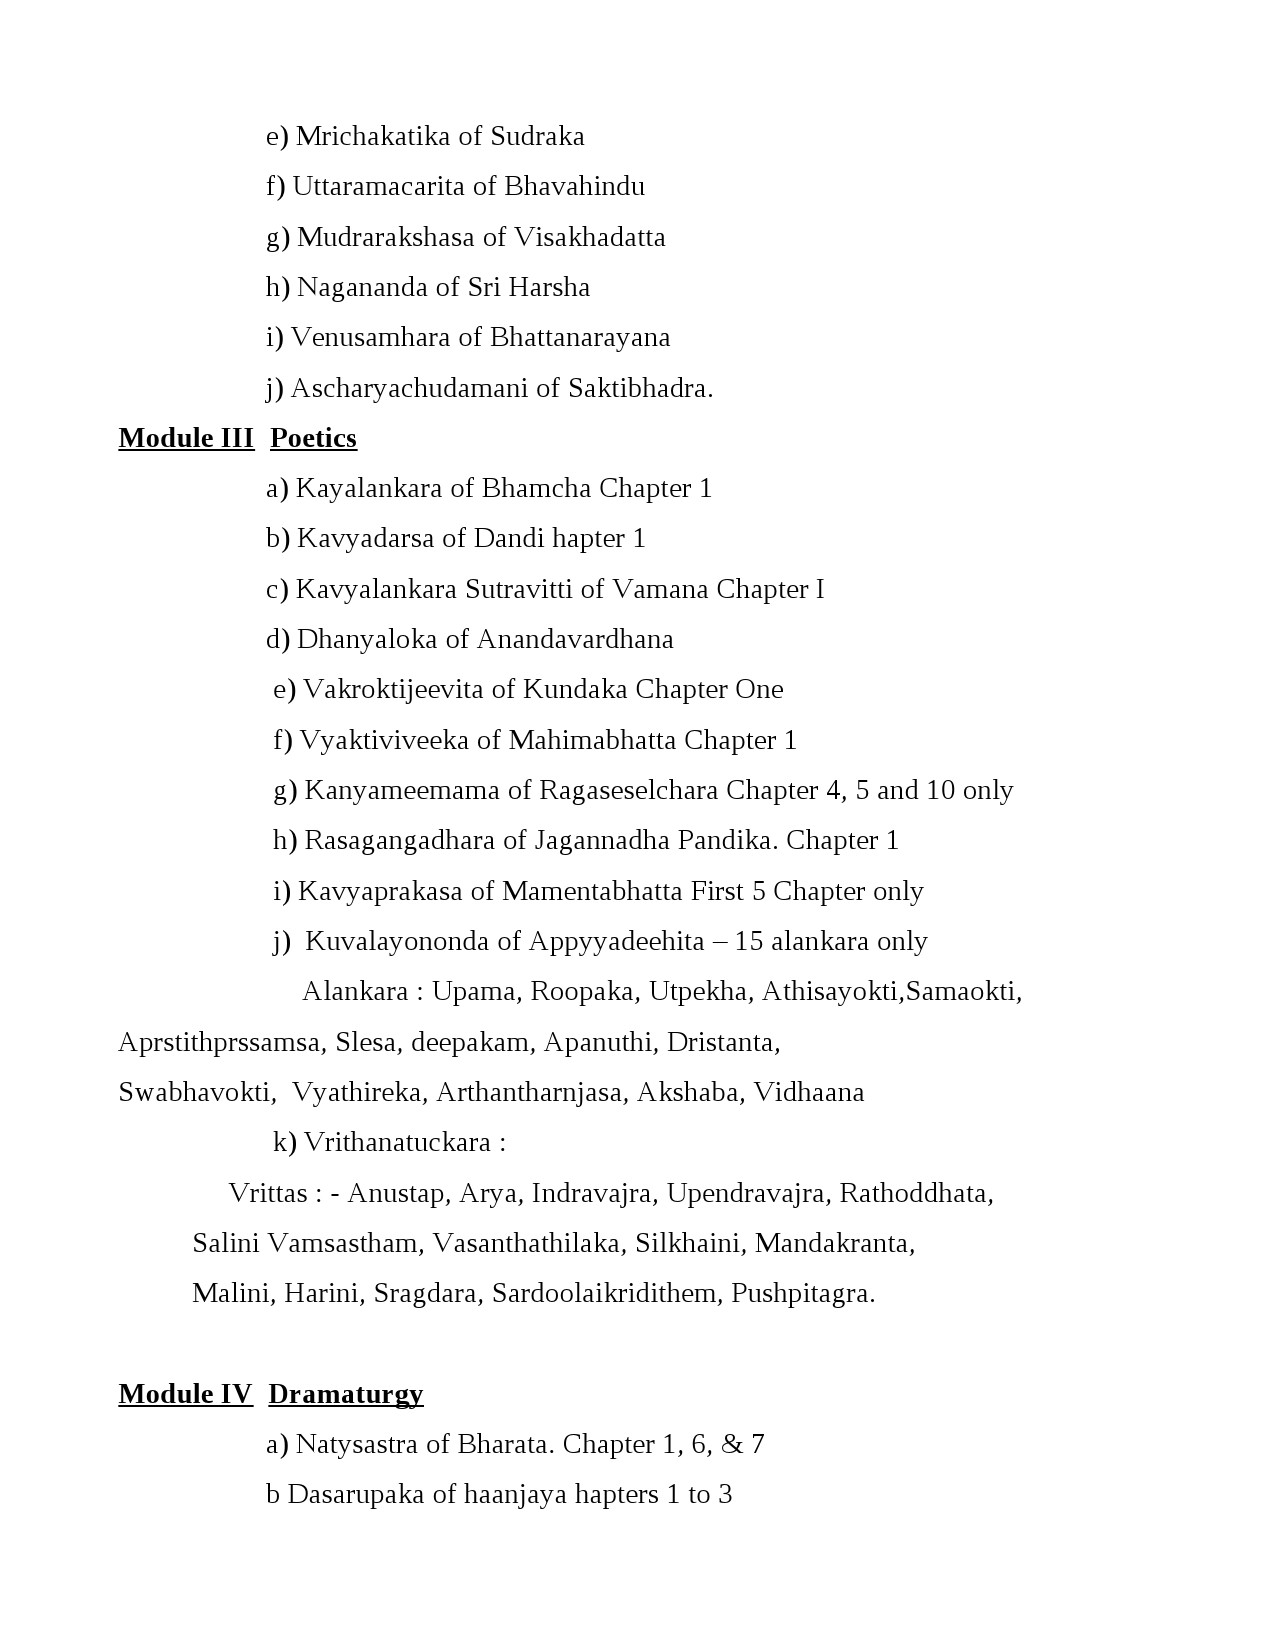 Sanskrit Syllabus for Kerala PSC 2021 Exam - Notification Image 12